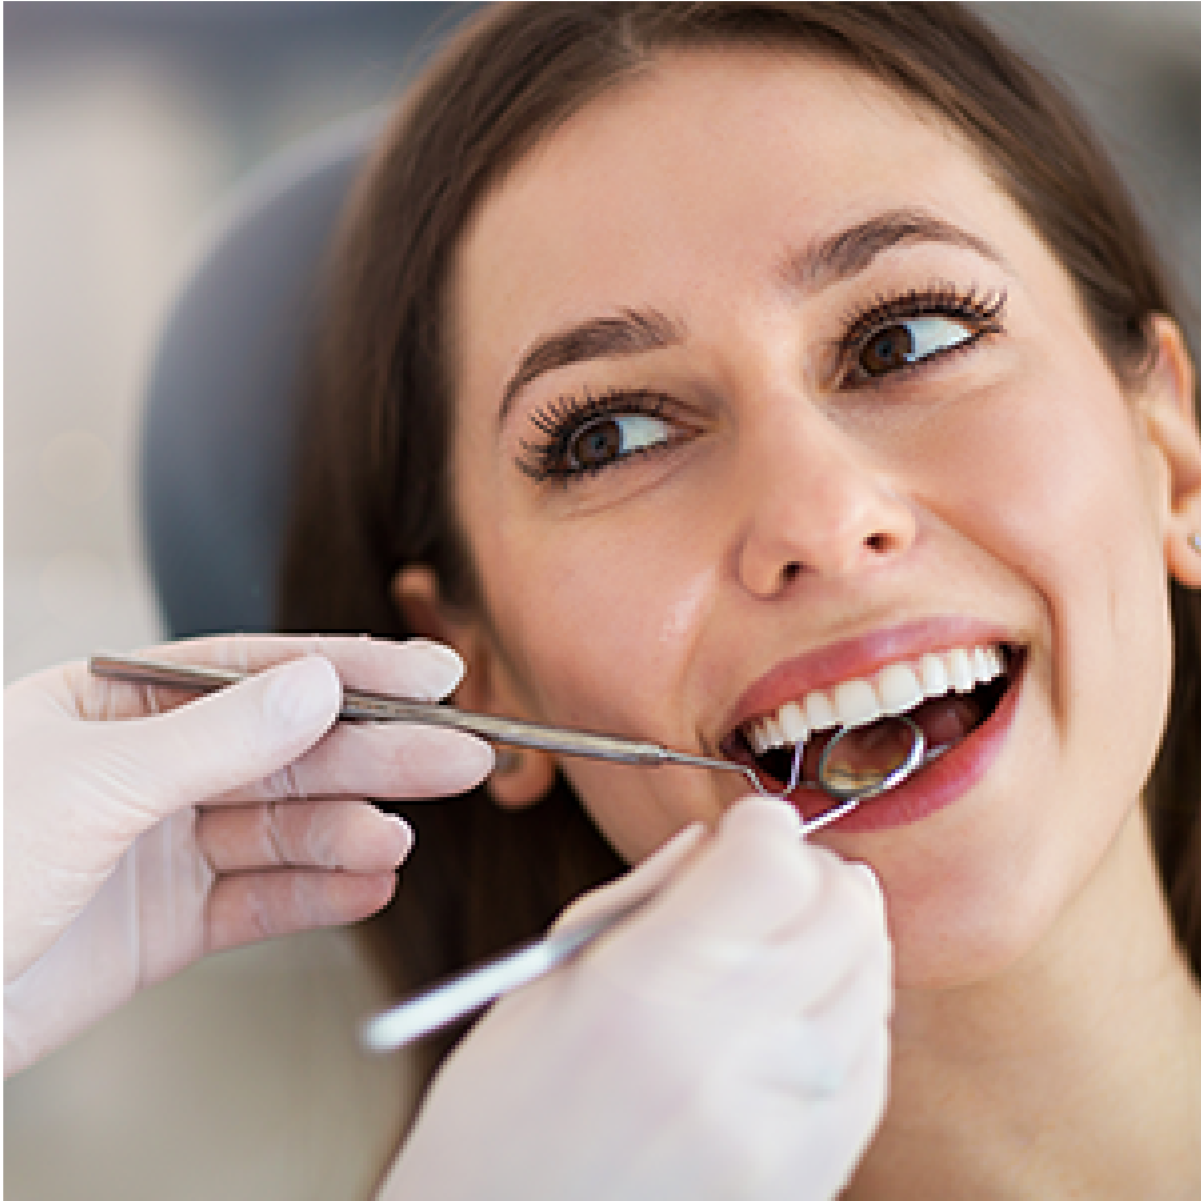 Finns det några risker med att inte undersöka tänderna regelbundet?